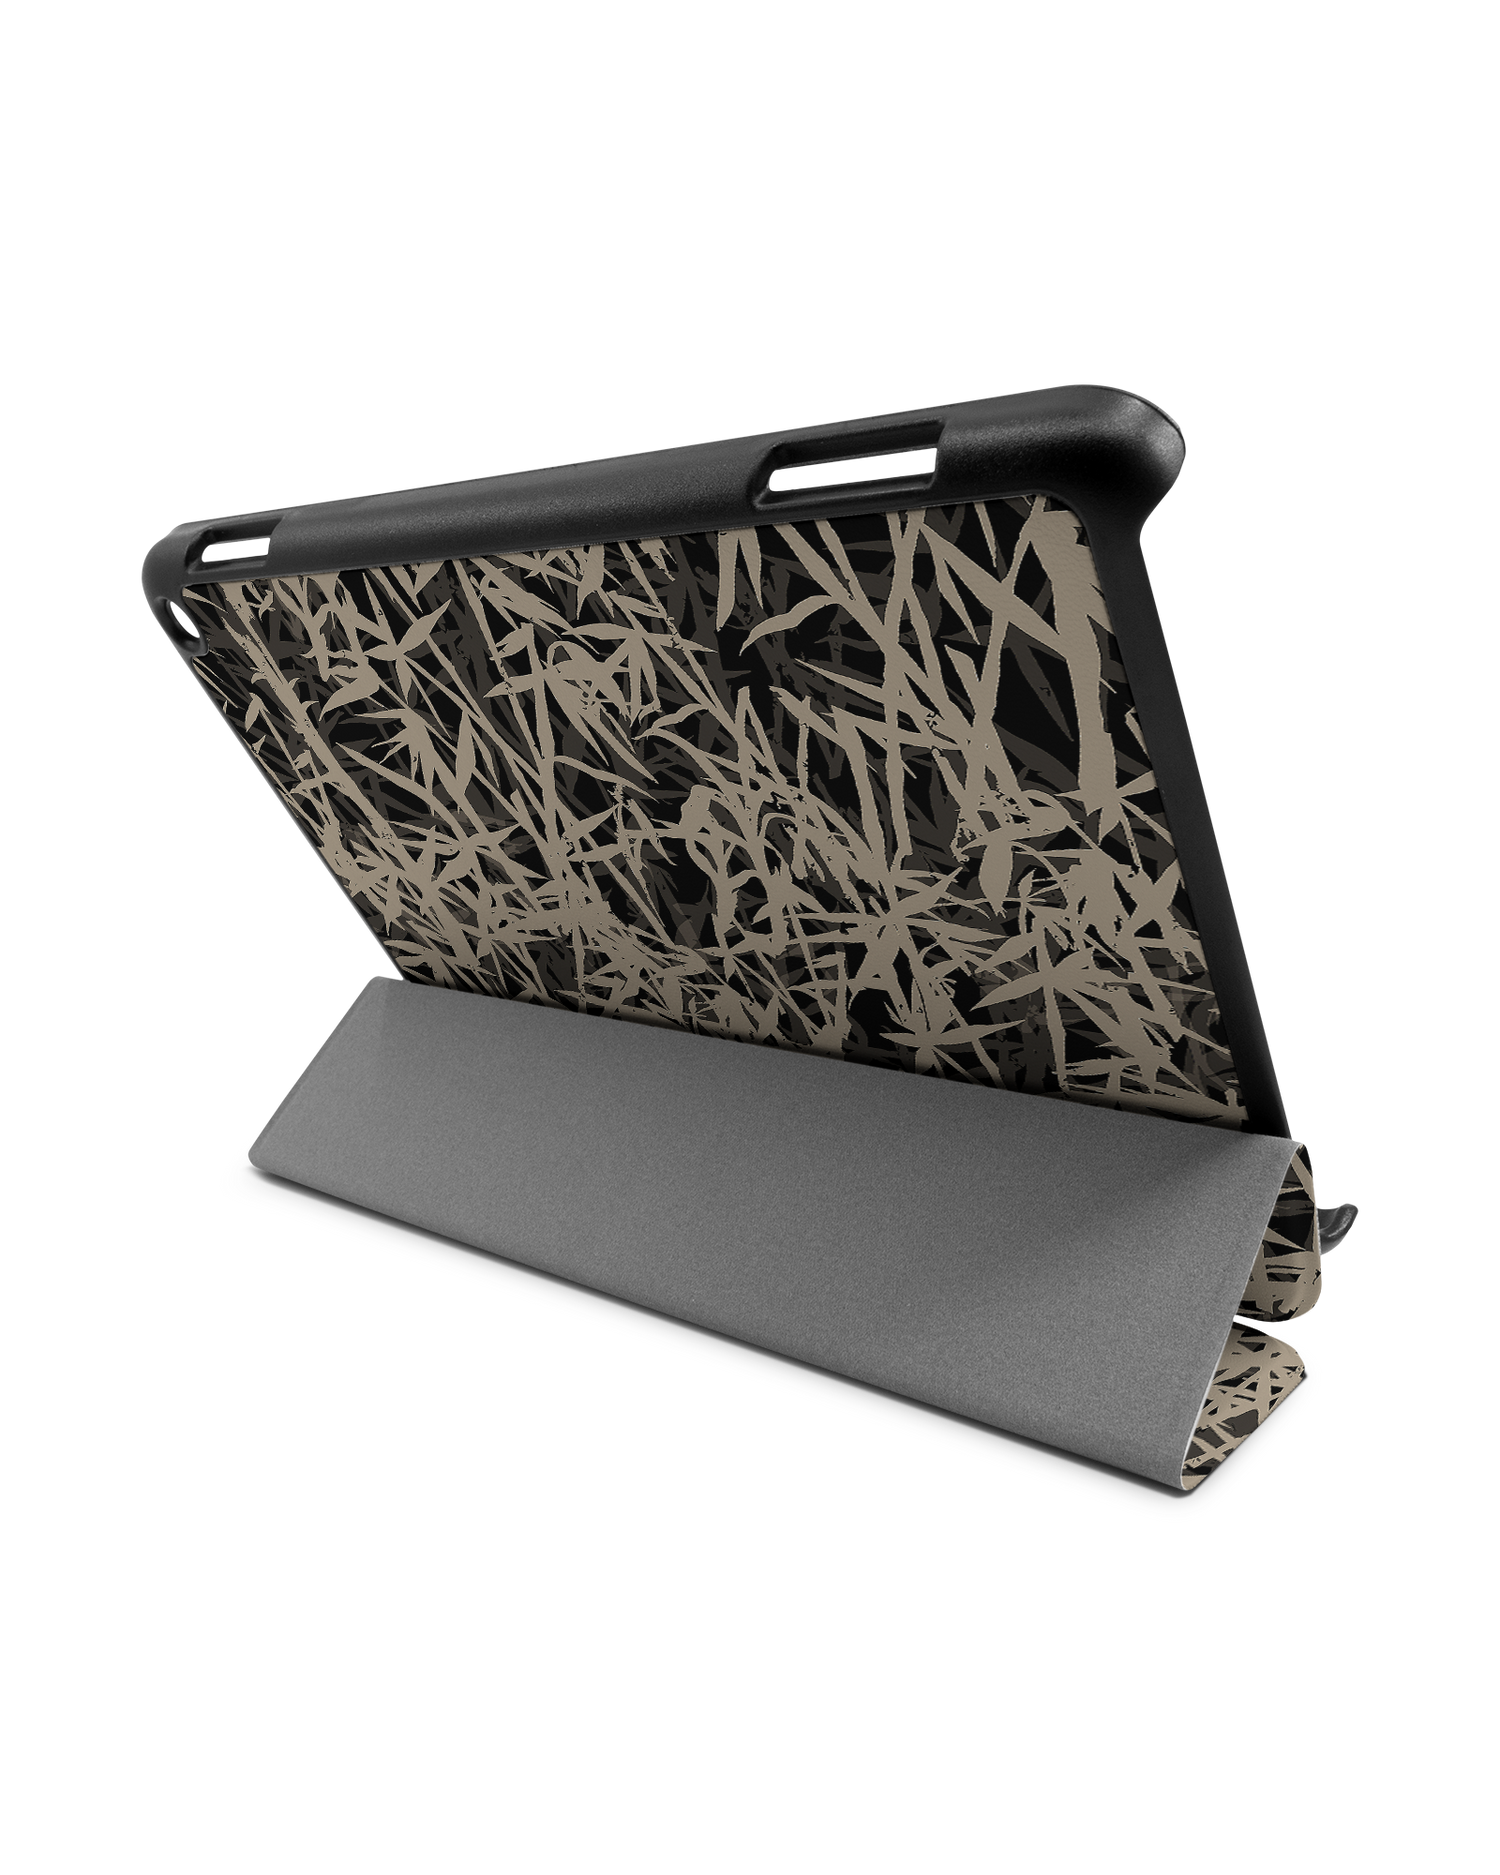 Bamboo Pattern Tablet Smart Case für Amazon Fire HD 8 (2022), Amazon Fire HD 8 Plus (2022), Amazon Fire HD 8 (2020), Amazon Fire HD 8 Plus (2020): Aufgestellt im Querformat